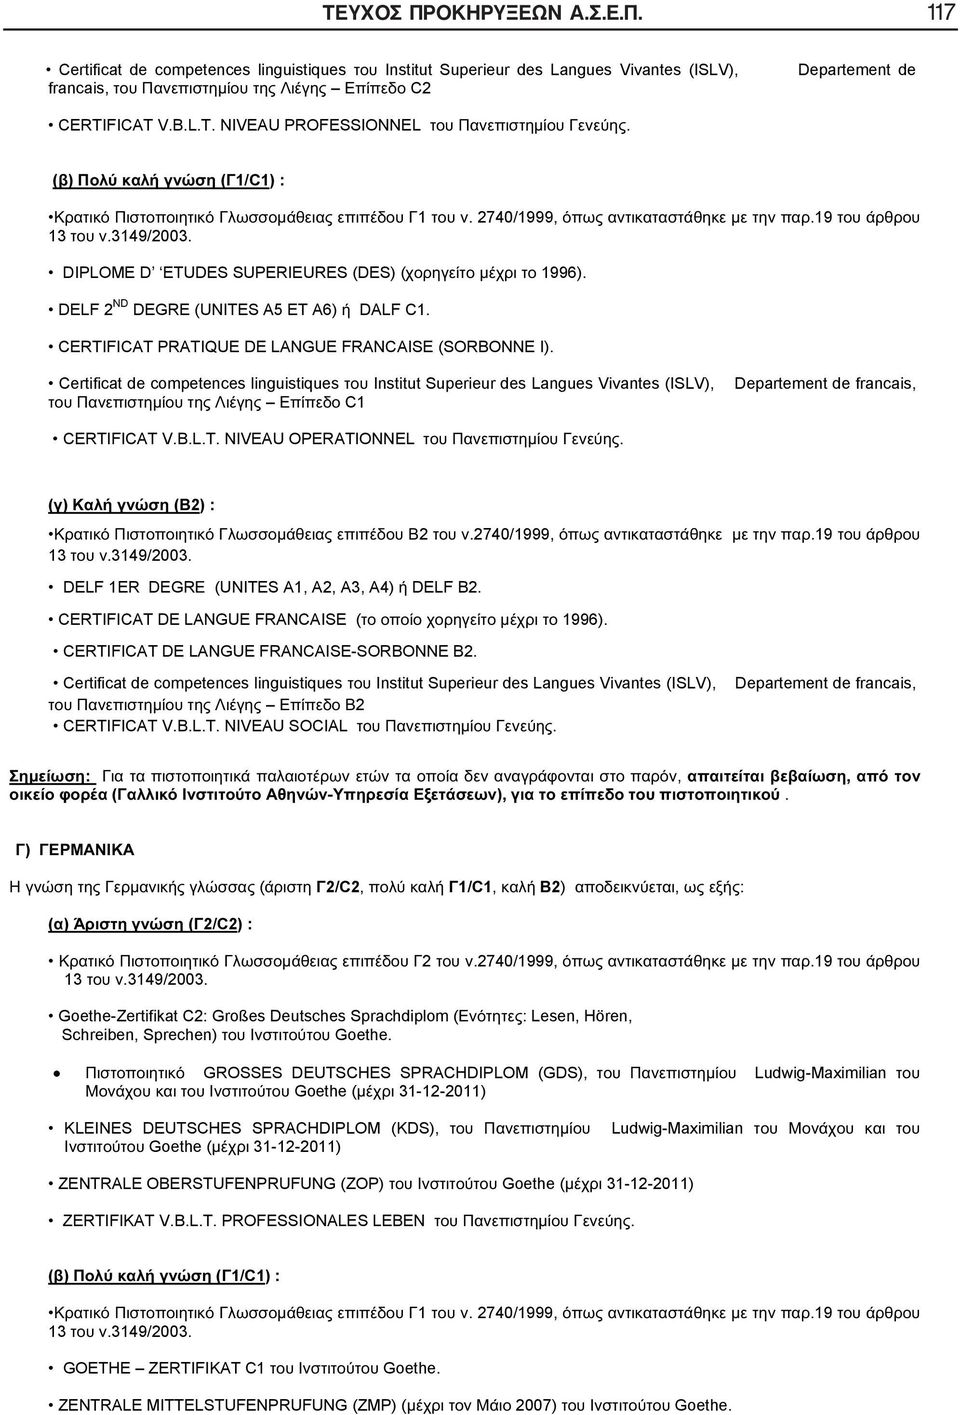 Certificat de competences linguistiques Institut Superieur des Langues Vivantes (ISLV), C1 Departement de francais, CERTIFICAT V.B.L.T. NIVEAU OPERATIONNEL. ( ) ( 2) : 2.2740/1999,.19 13.3149/2003.